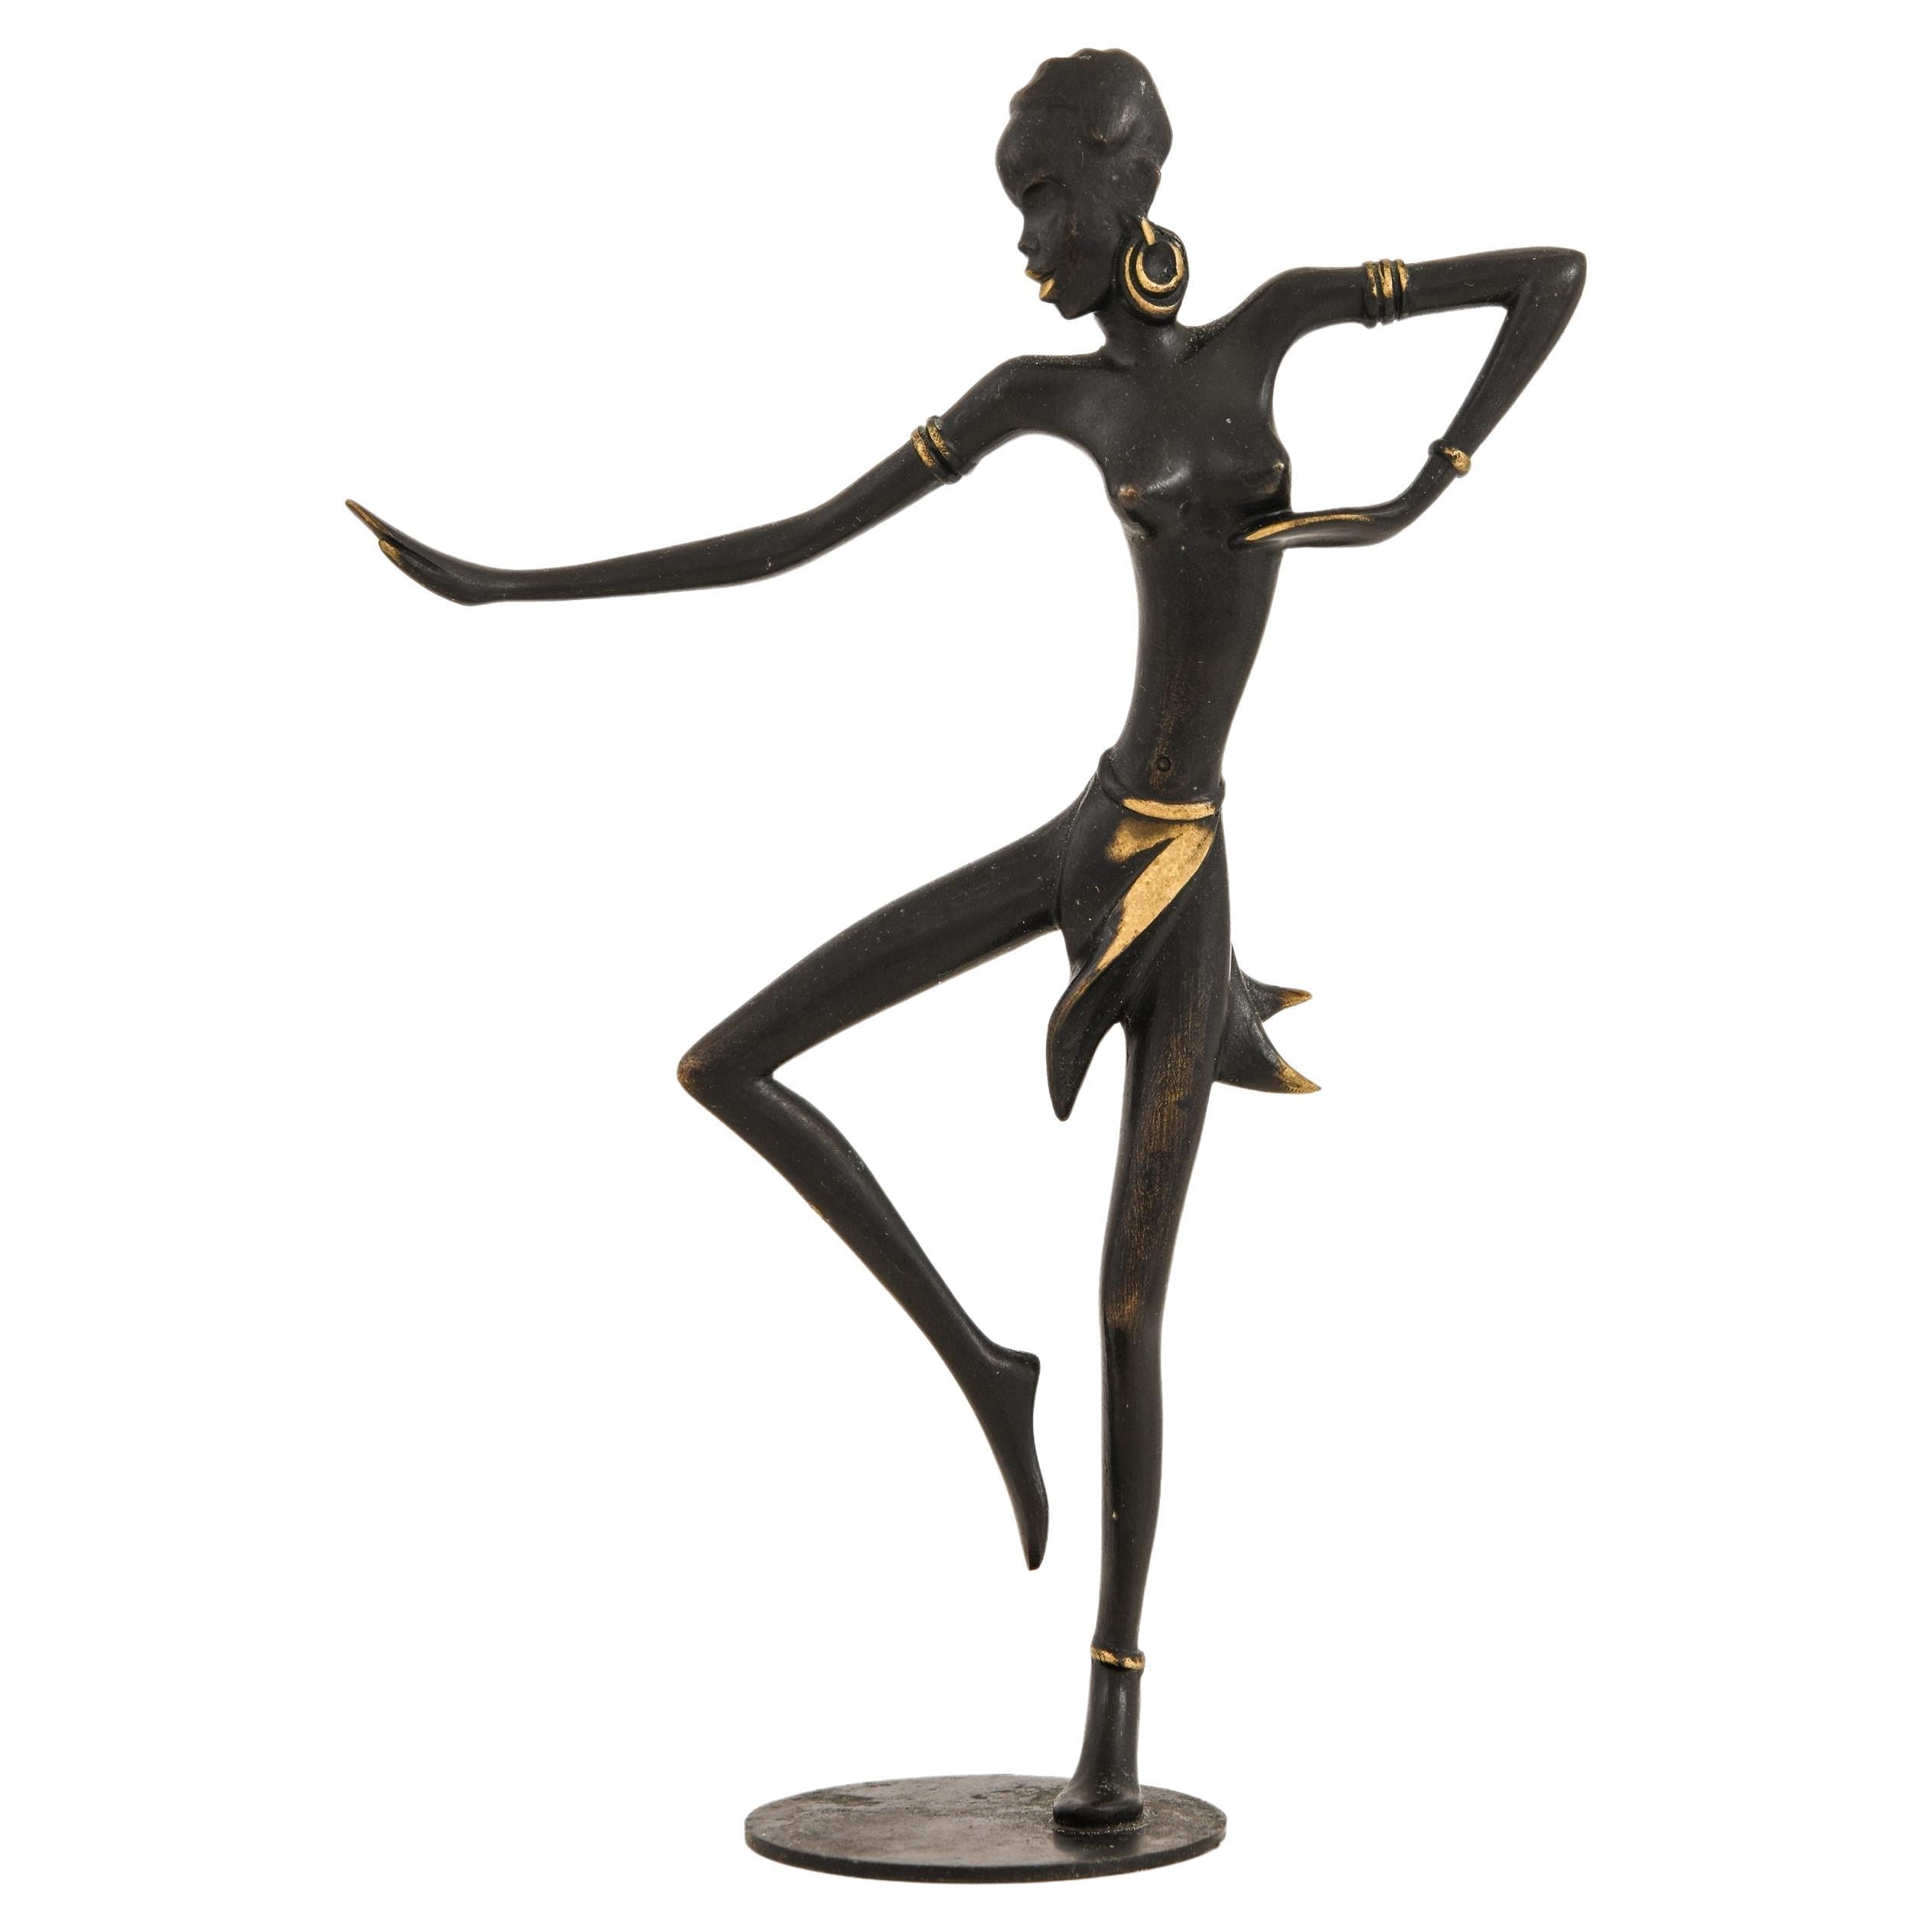 Dancing Women Sculpture in Brass by Walter Bosse, 1950's